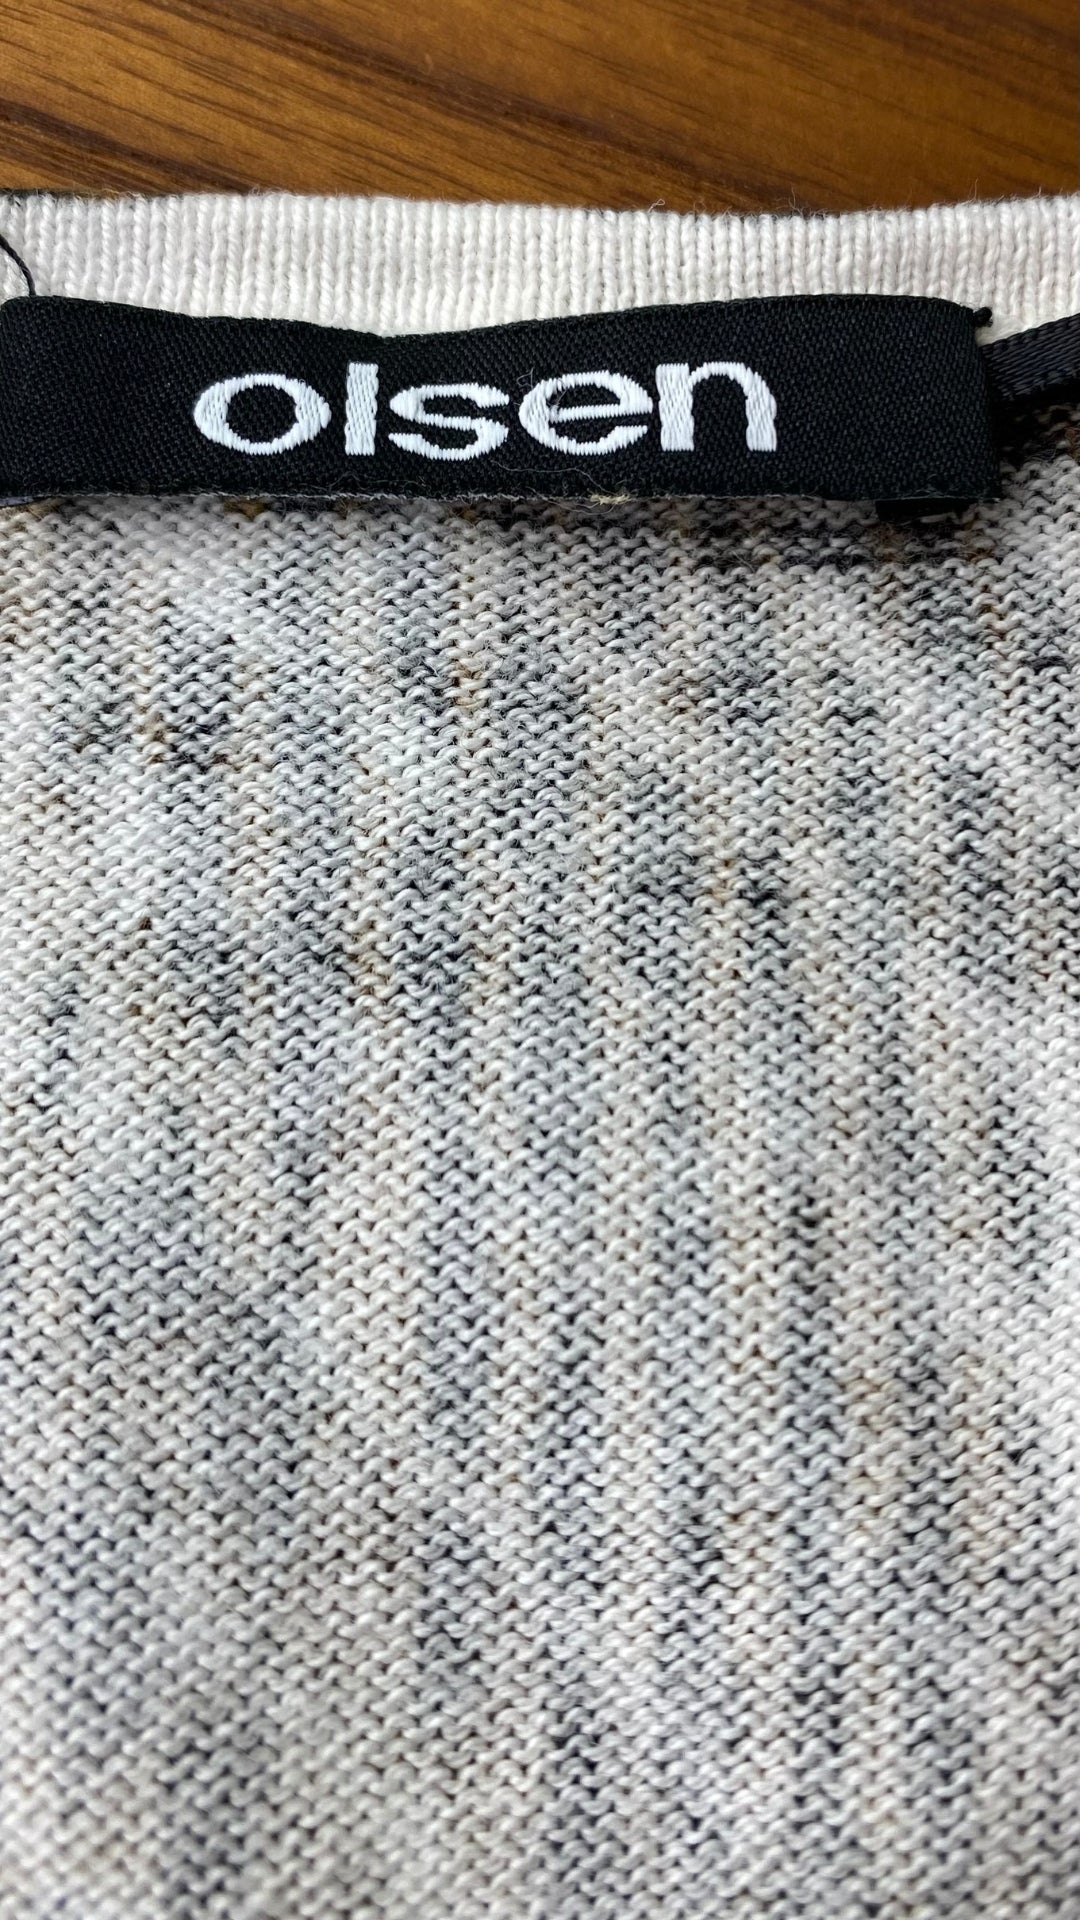 Chandail tricot col v motif style léopard Olsen, taille s/m. Vue de l'étiquette de marque.